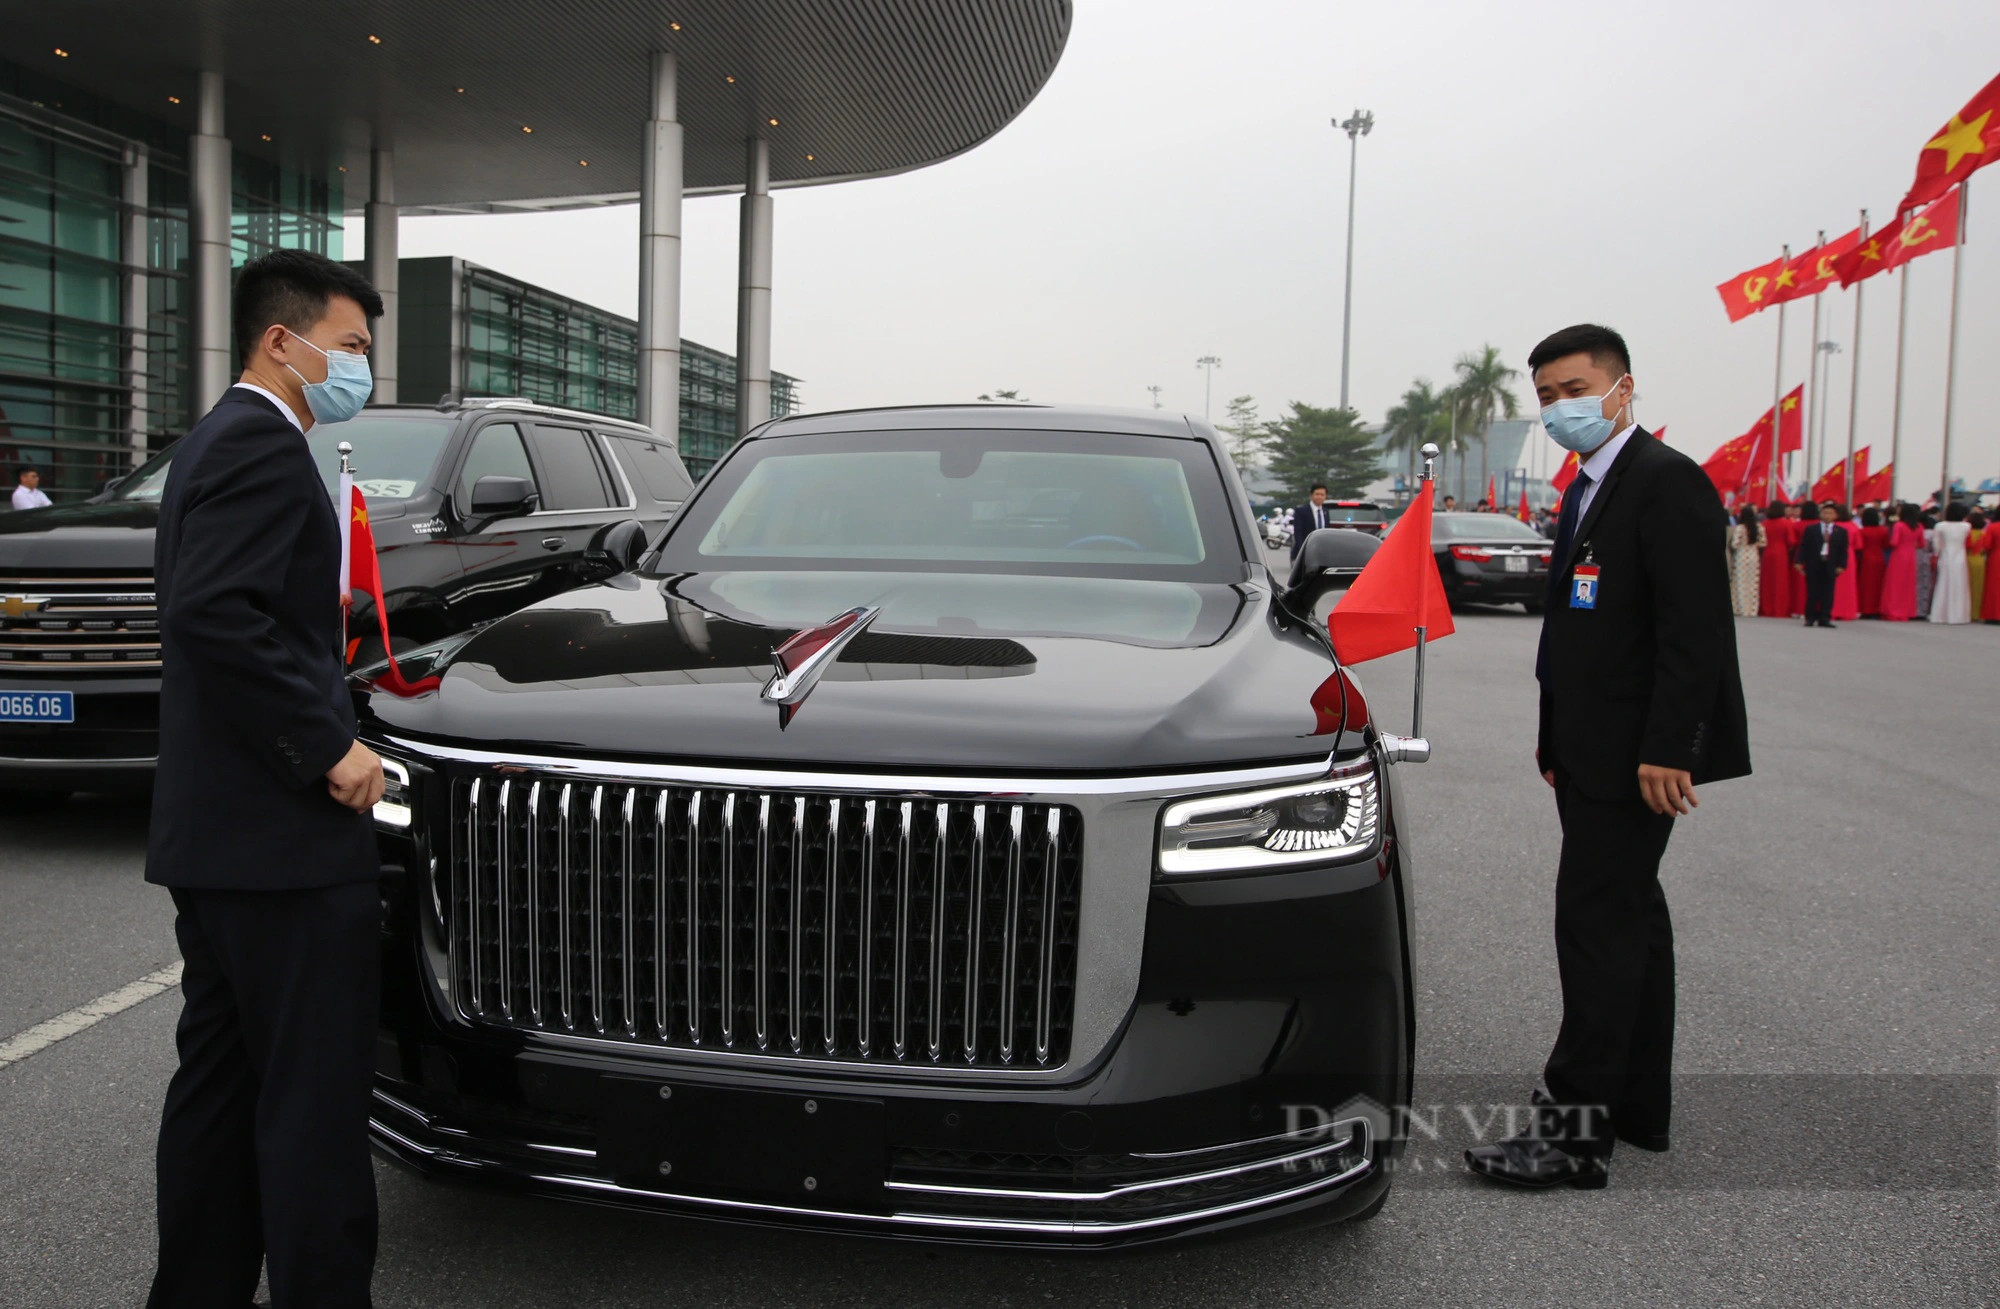 Ngắm siêu xe Hồng Kỳ N701 chở Tổng bí thư, Chủ tịch nước Tập Cận Bình trên đường phố Hà Nội - Ảnh 4.